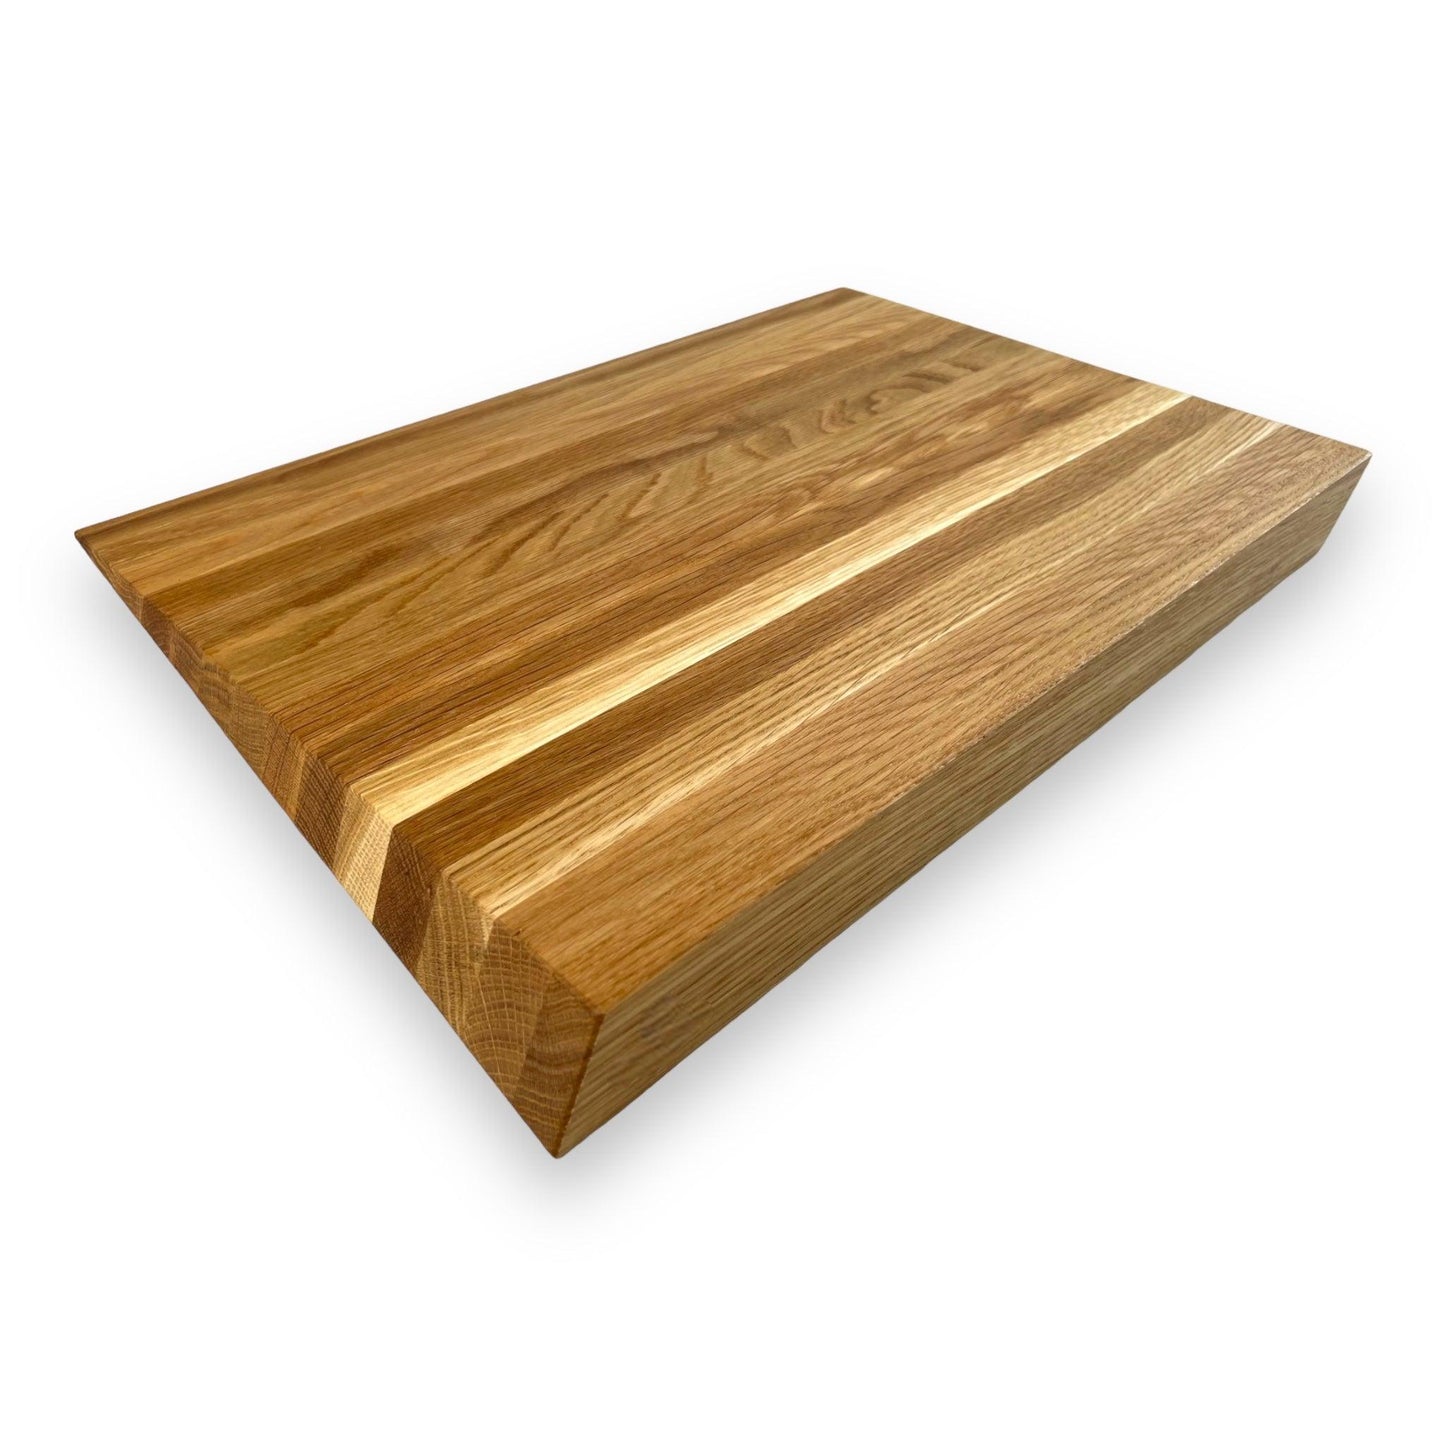 2" White Oak Z-shaped cutting board - BOISWOOD